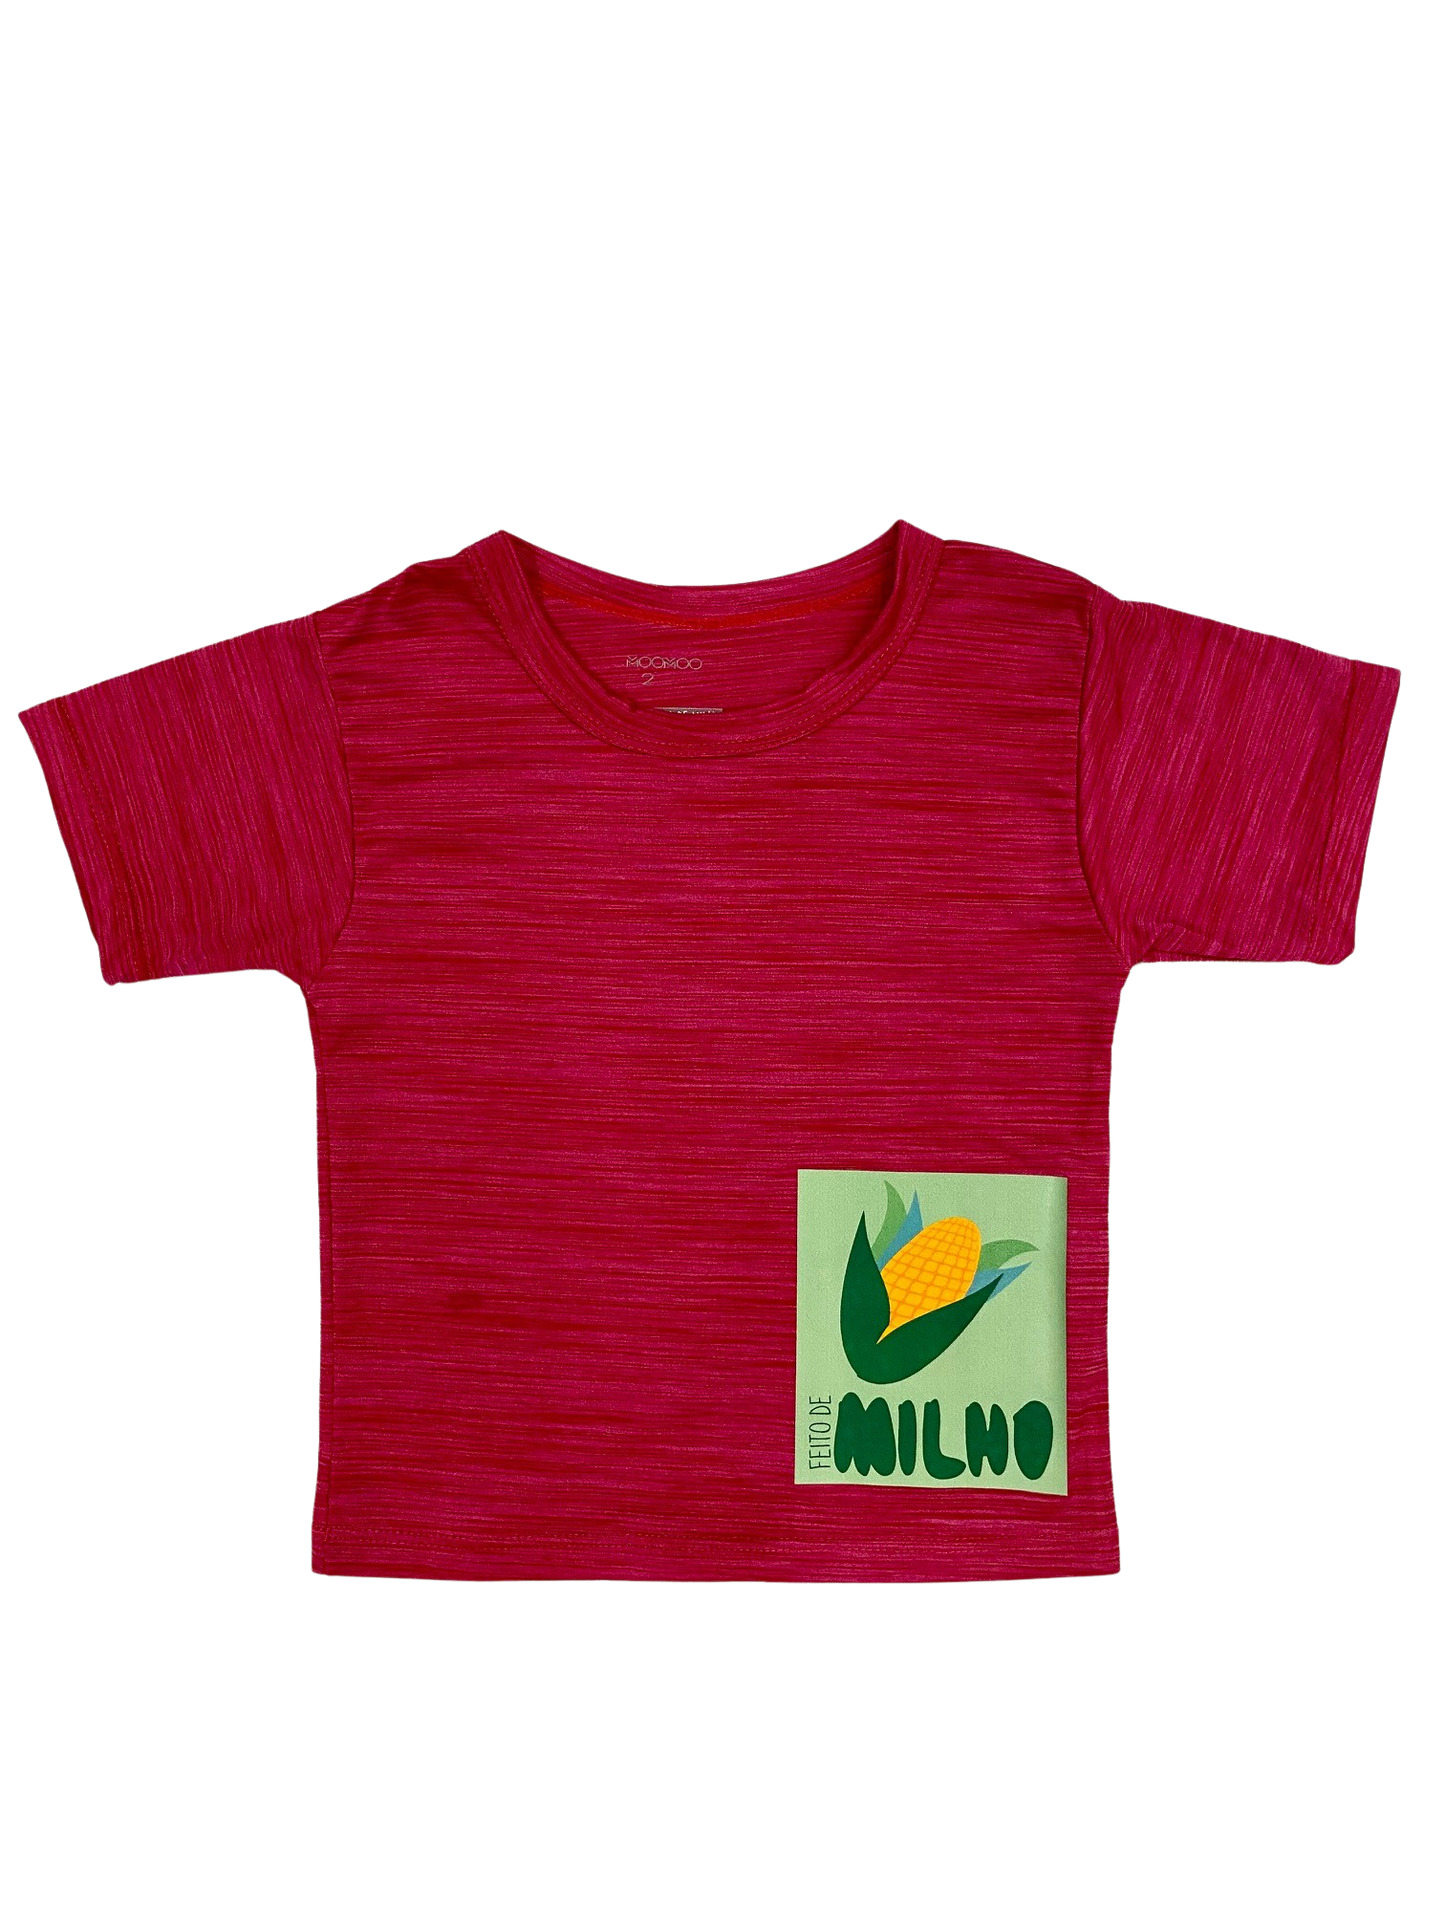 Camiseta Feito de Milho